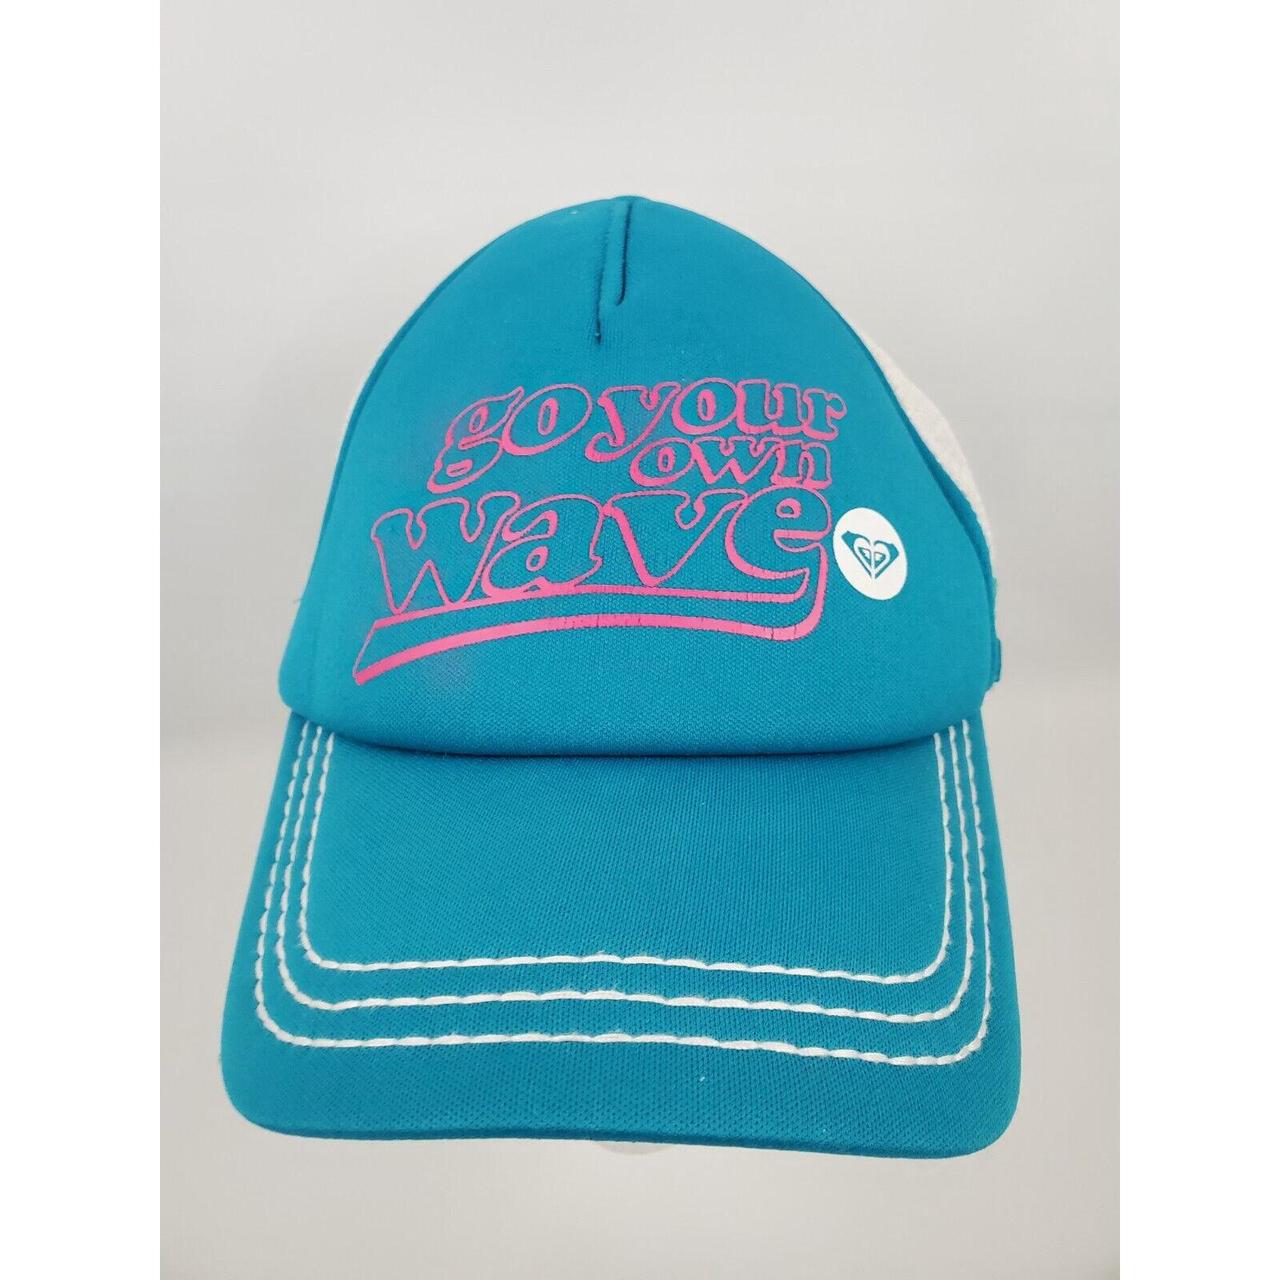 Roxy Women's Hat | Depop